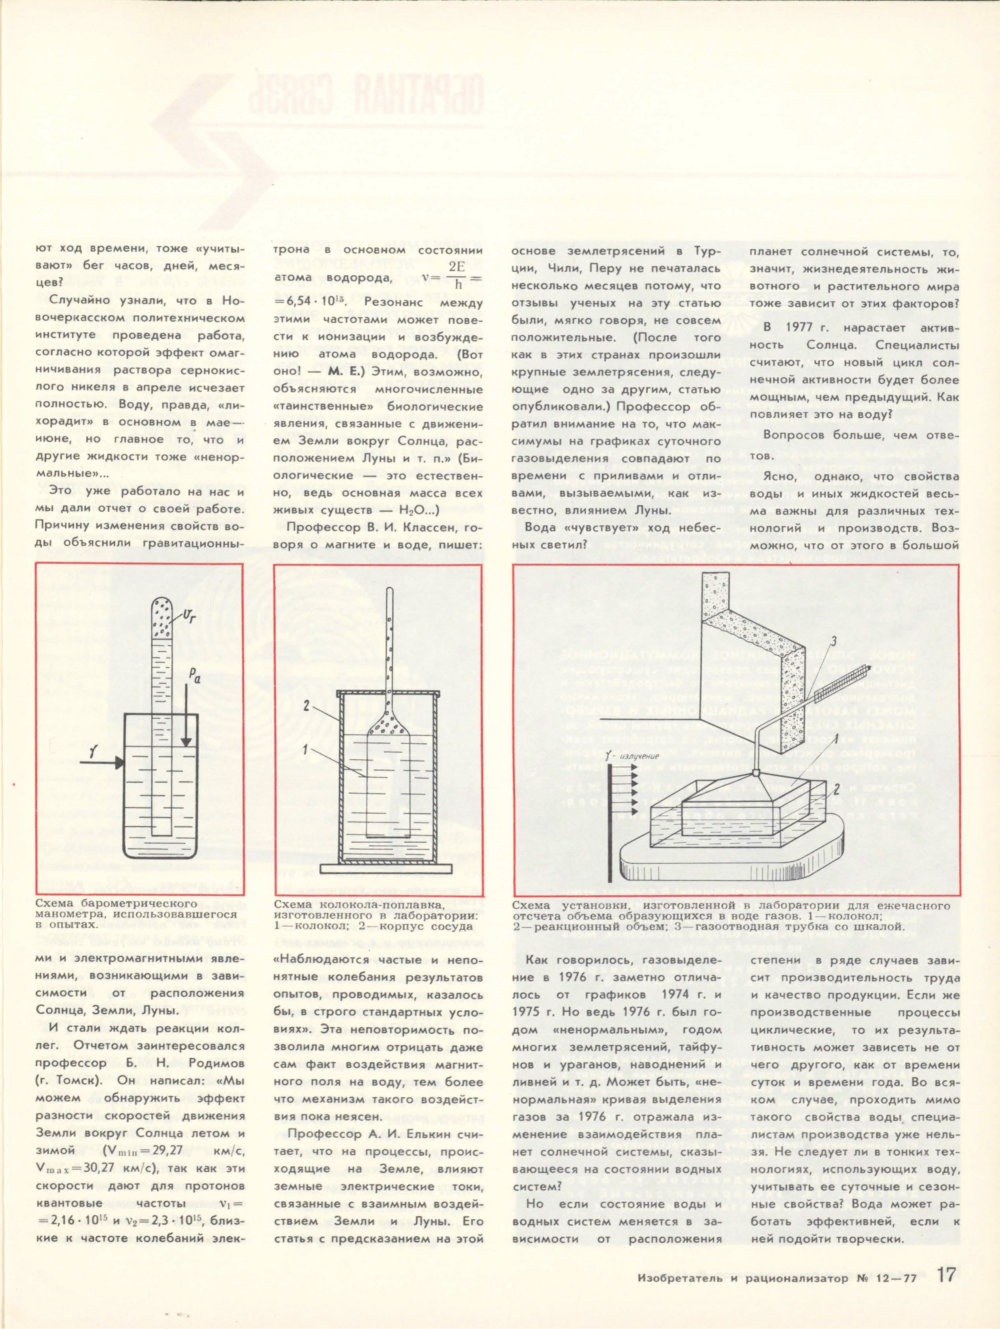 Ненормальная вода. М.Е. Ерошов. Изобретатель и рационализатор, 1977, №12, с.16-17. Фотокопия №2